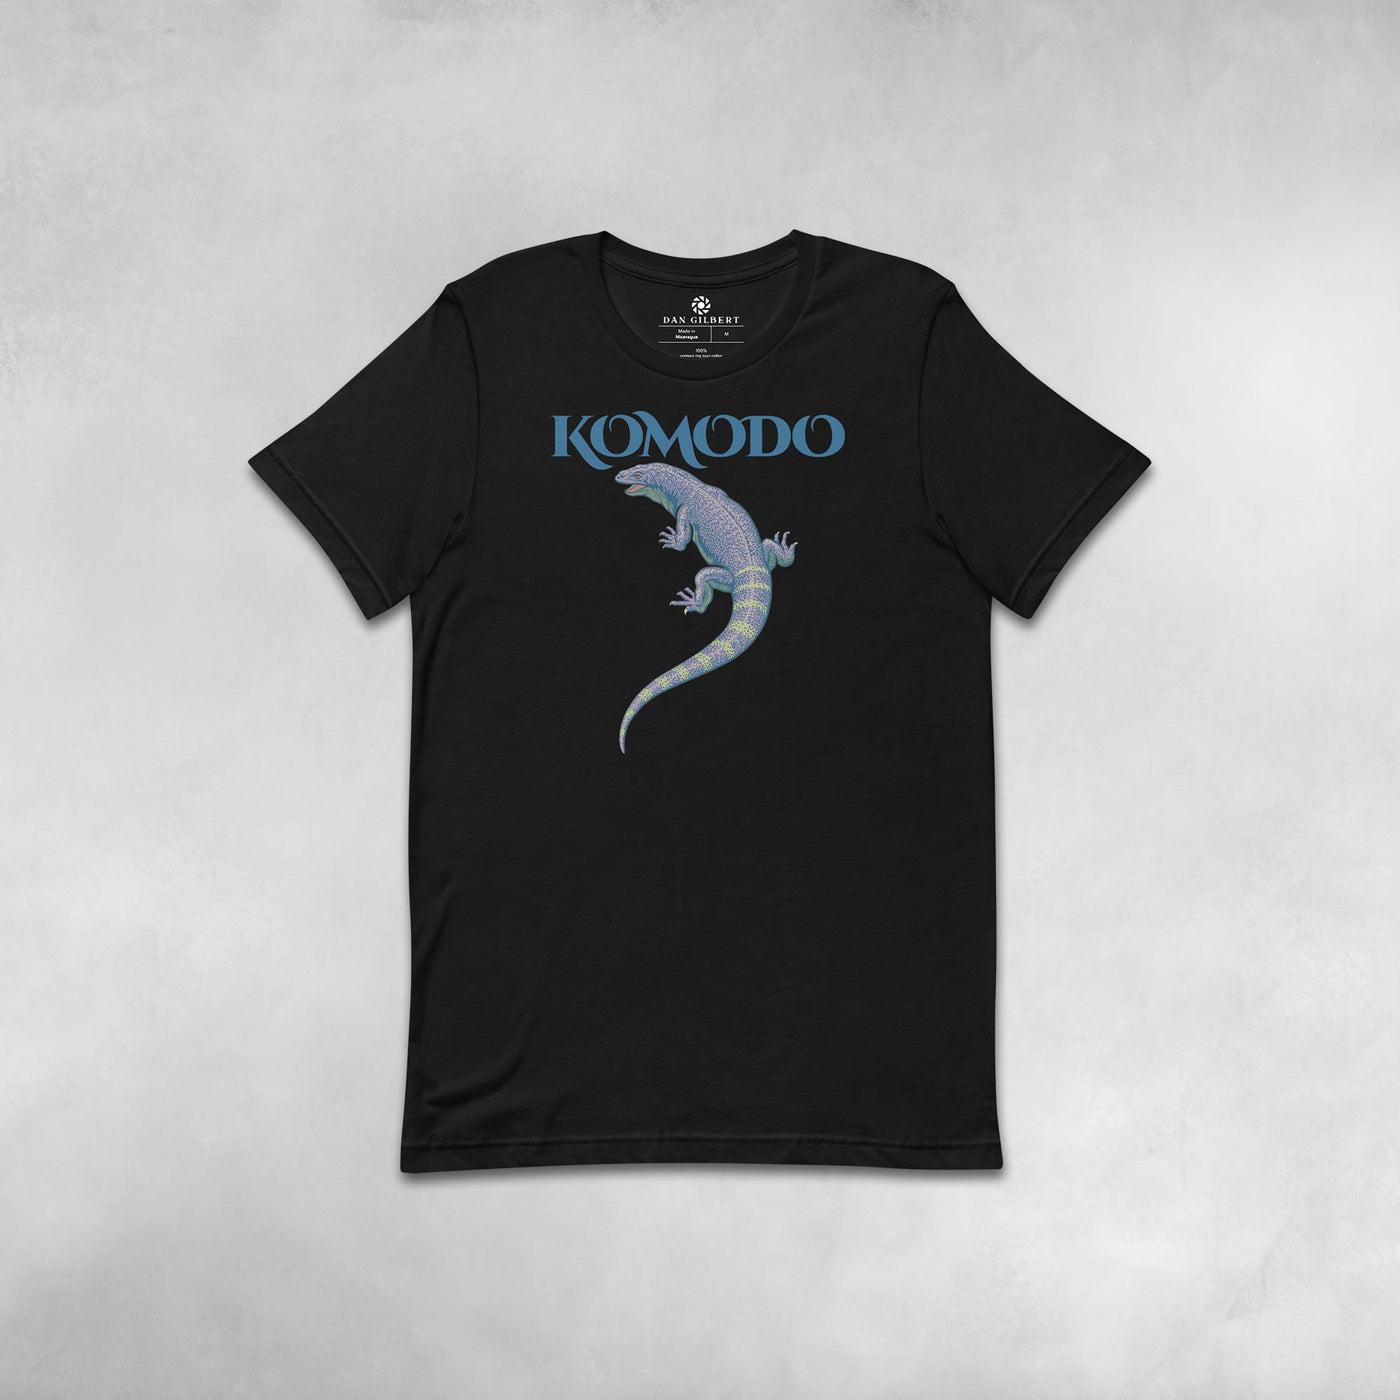 Komodo - T-shirt